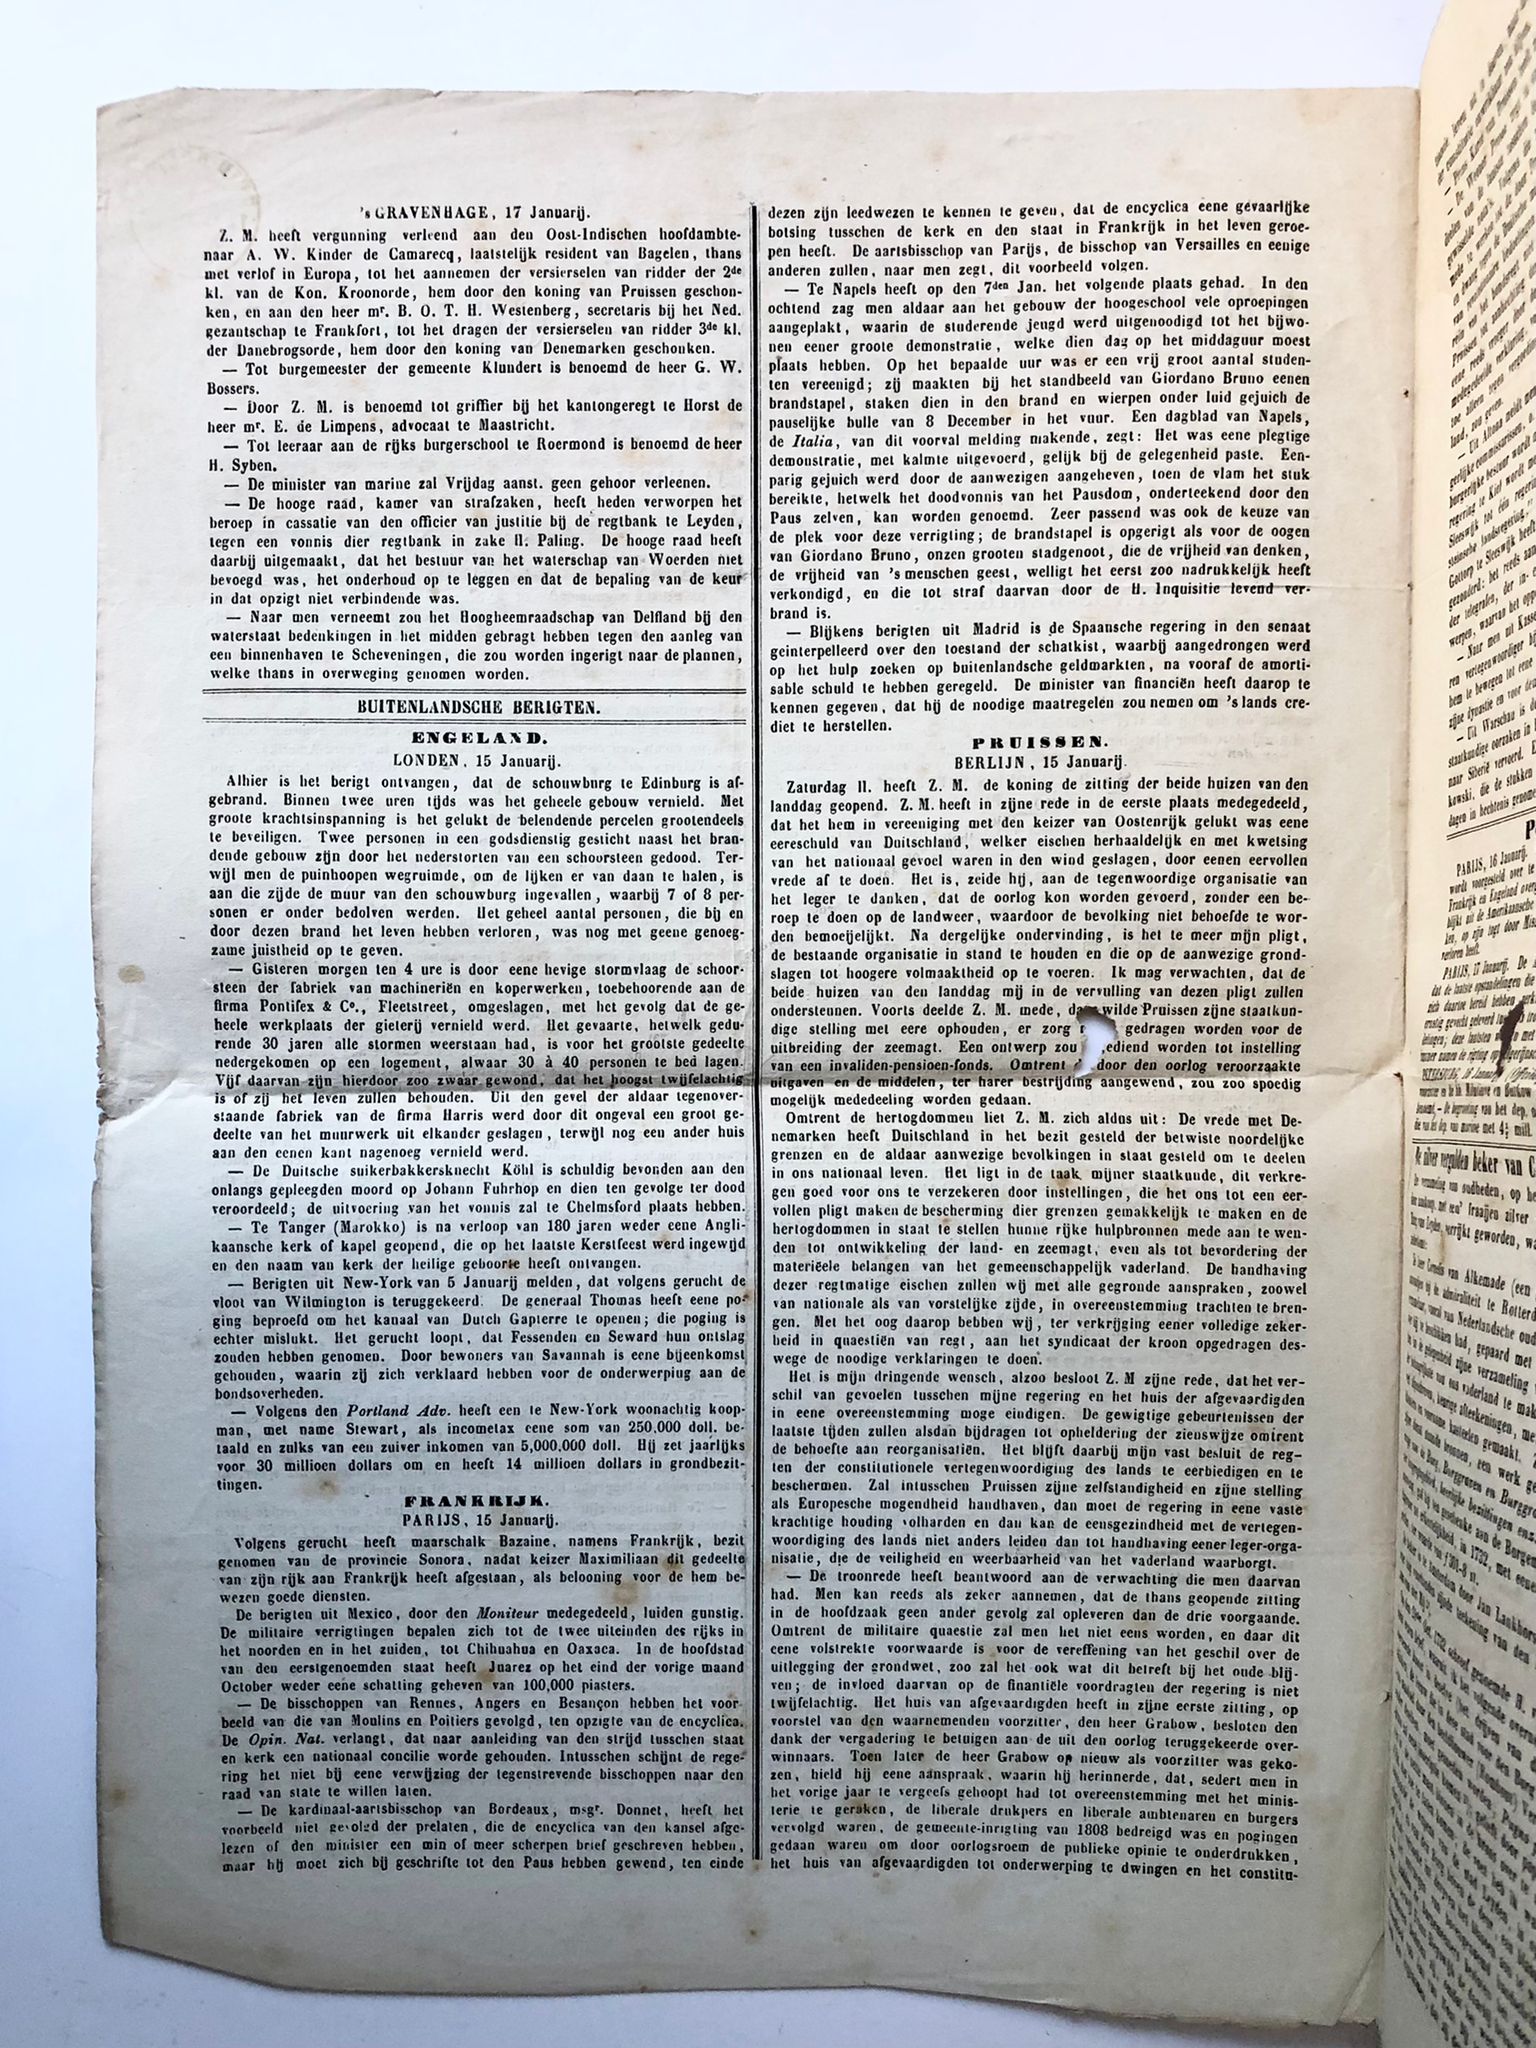 [Newspaper, Leiden, 1865] Artikel 'De zilver vergulden beker van C. van Alkemade Ao- 1732'. Door R[ammelman] E[lsevier], afgedrukt in Leydsche Courant 18-1-1865.